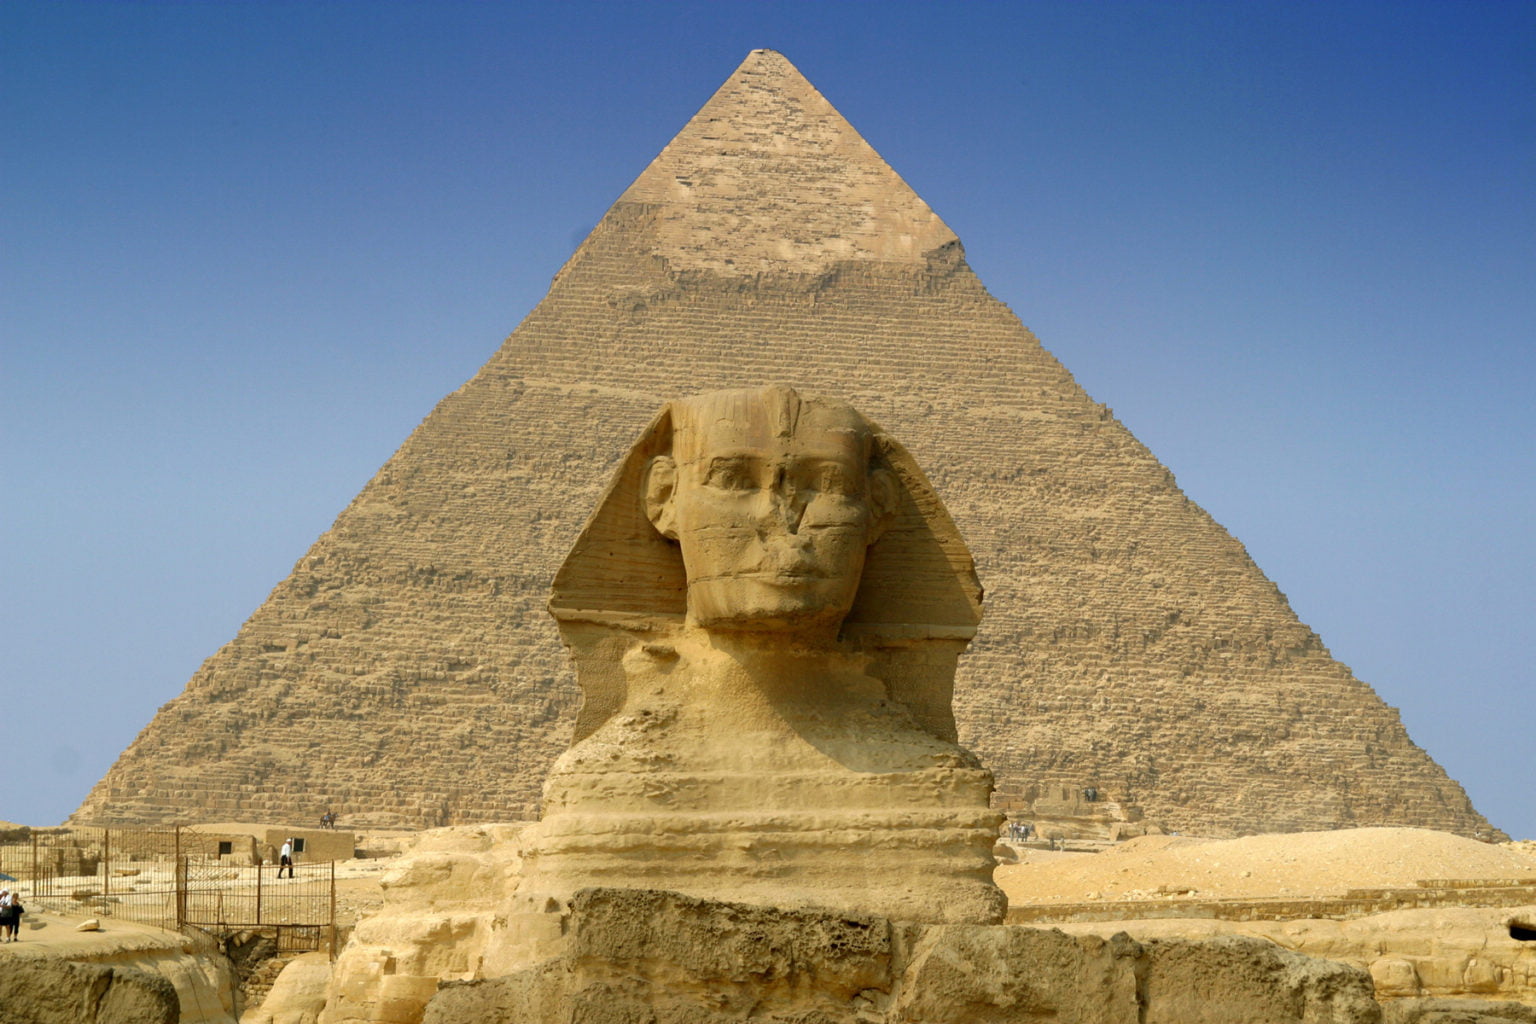 Sphinx 1536x1024 